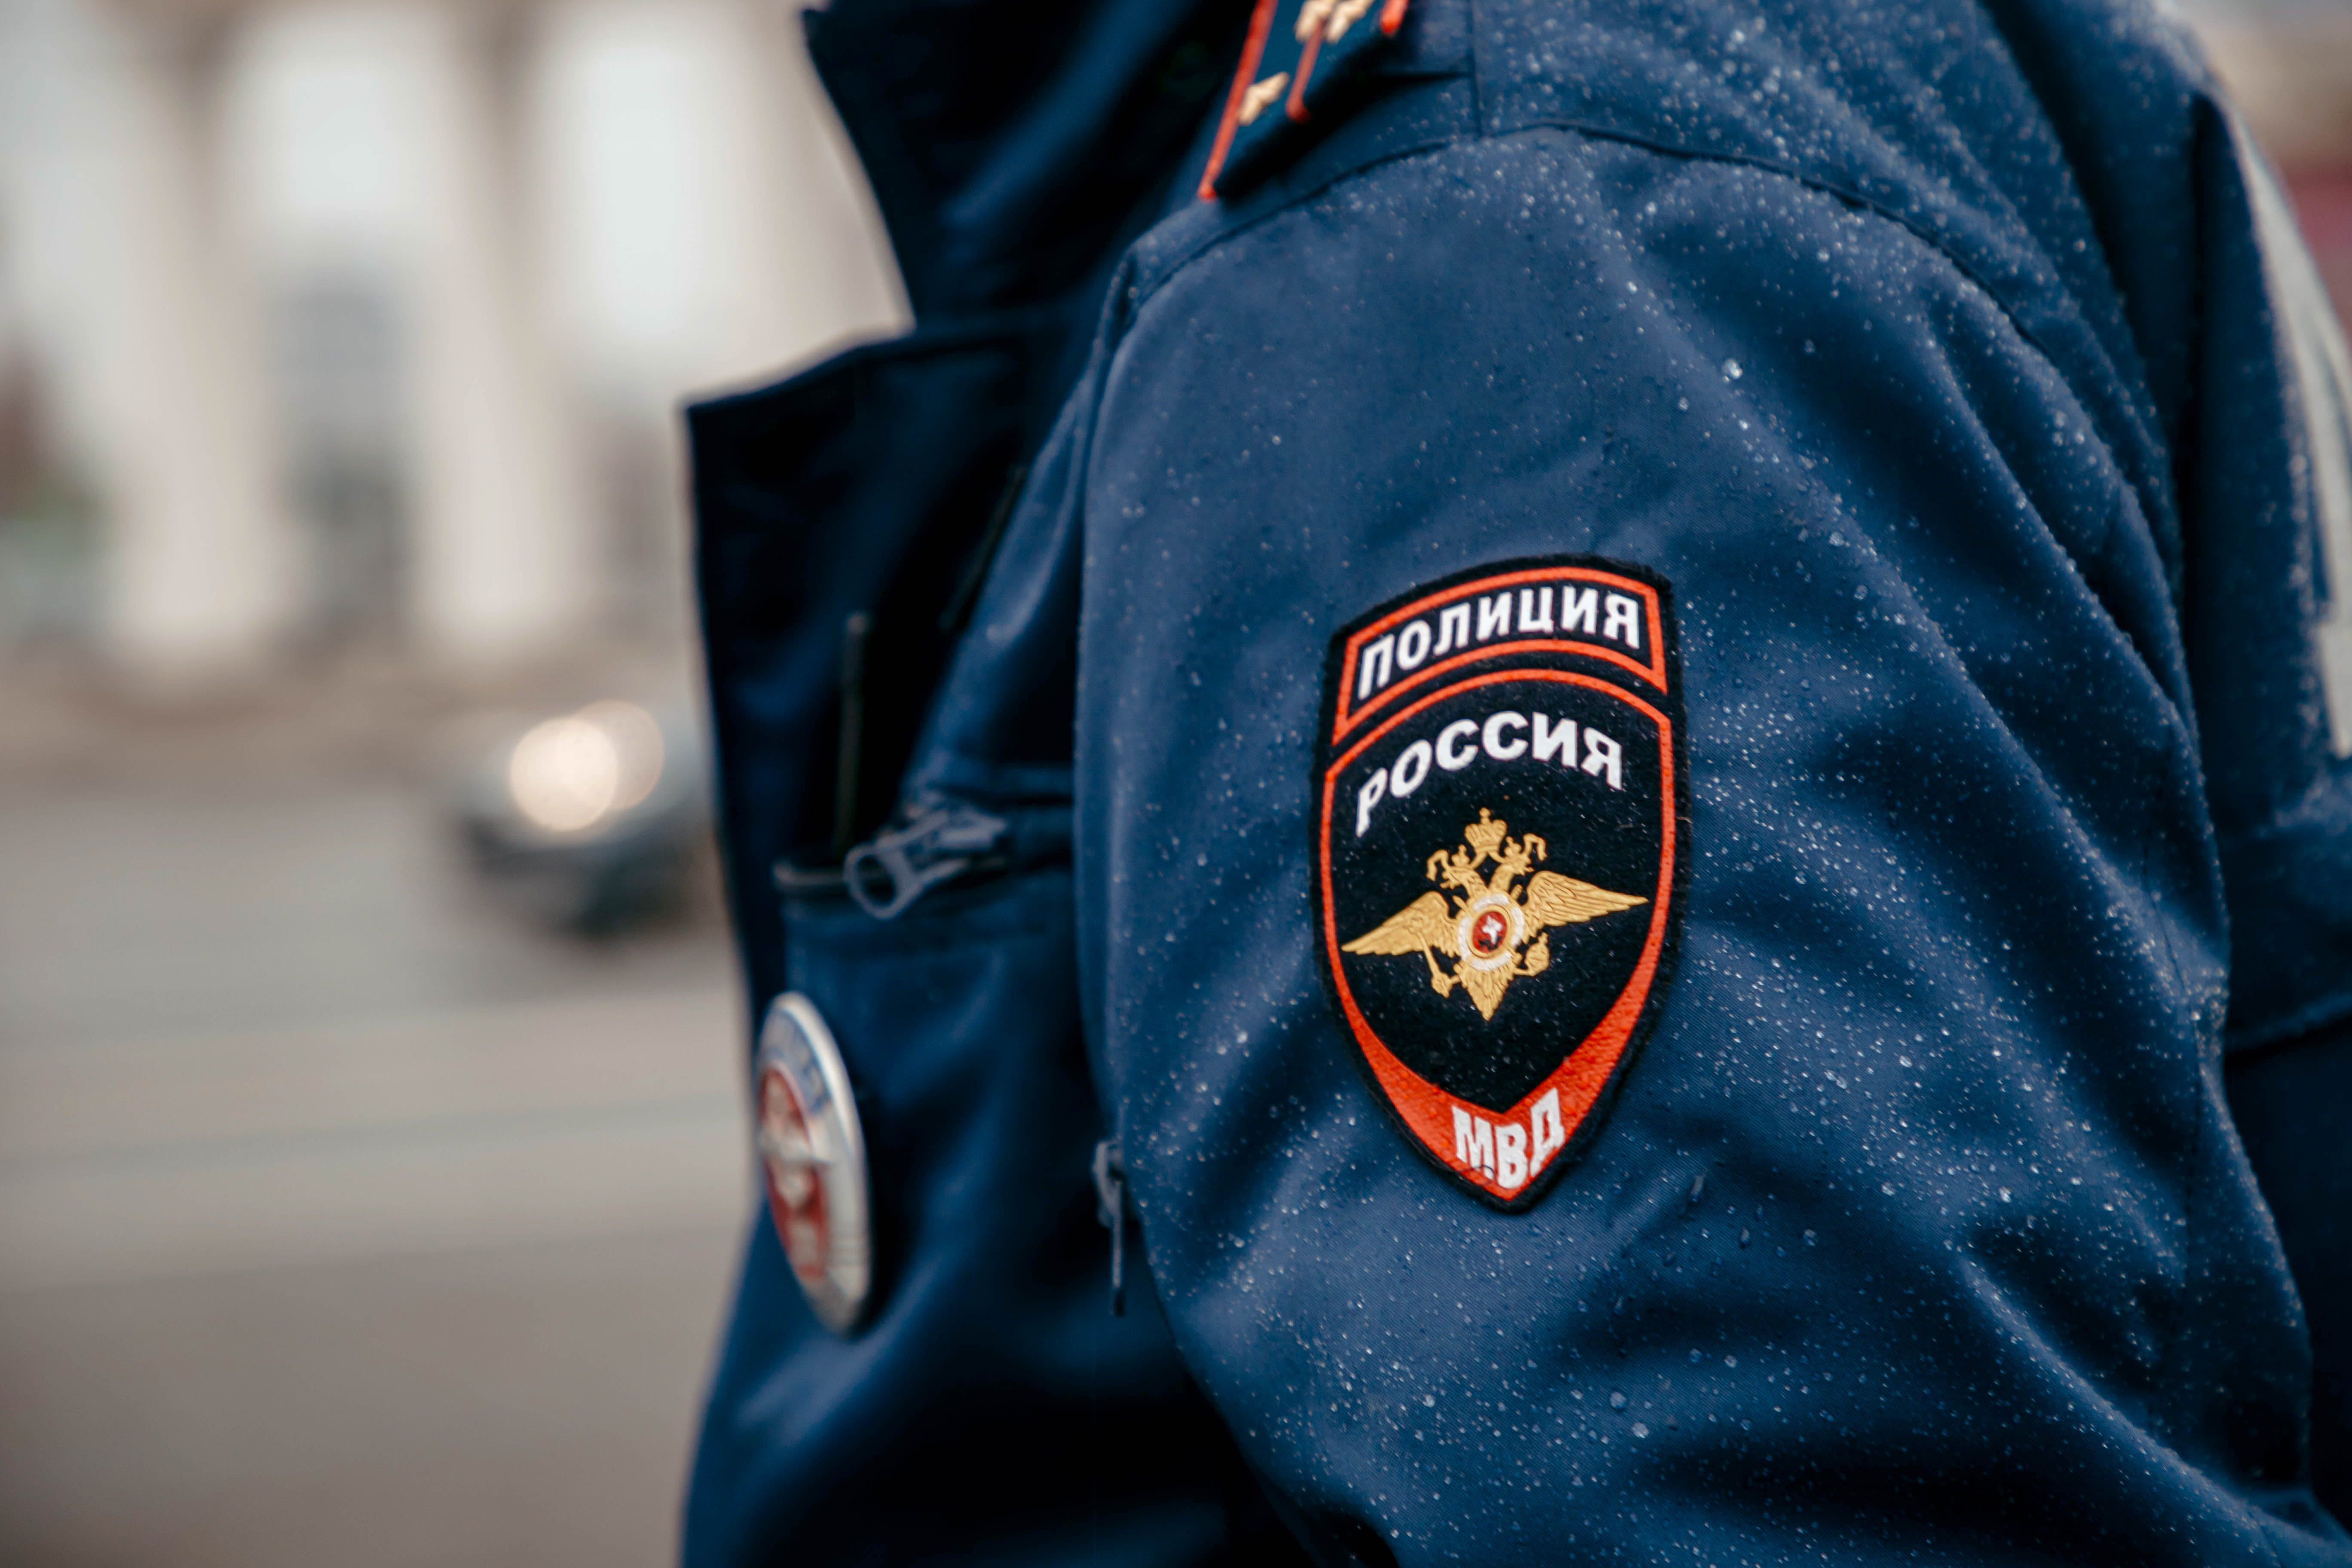 В Тверской области раскрыли кражу средств личной гигиены из магазина